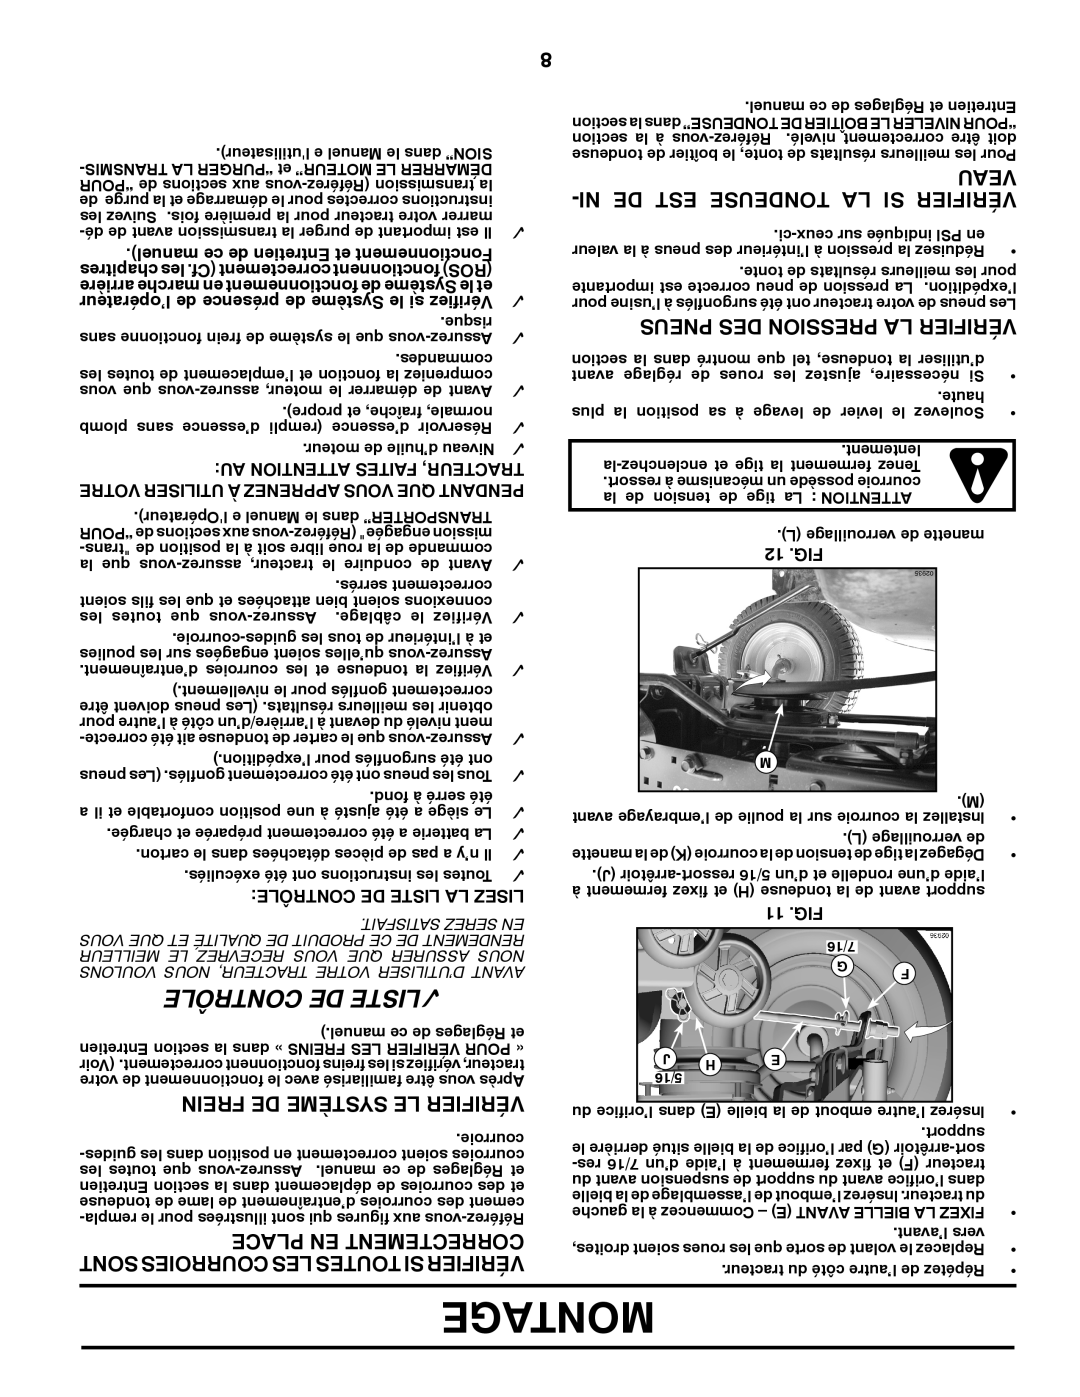 Poulan 417920 manual Montage, Contrôle De Liste, Ni De Est Tondeuse La Si Vérifier, Frein De Système Le Vérifier, Veau 